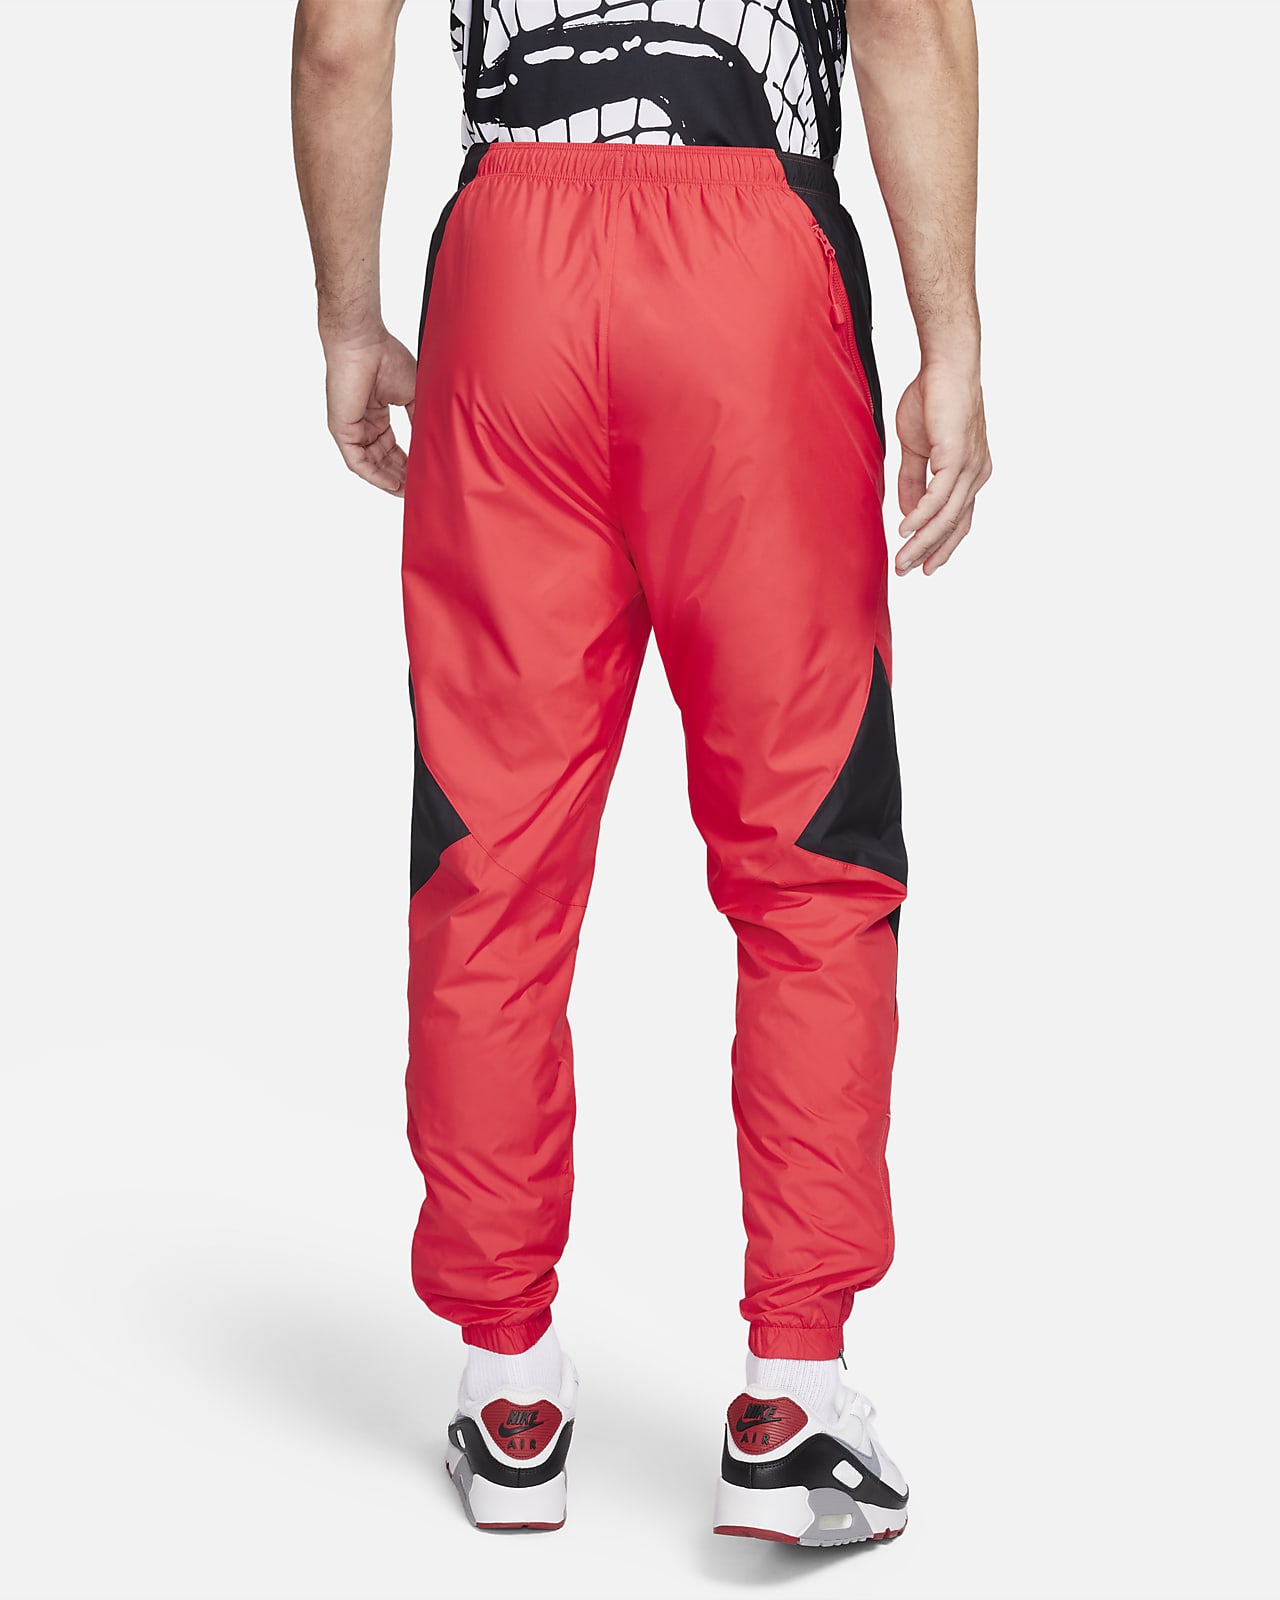 Mujer Rojo Completo Pants. Nike MX